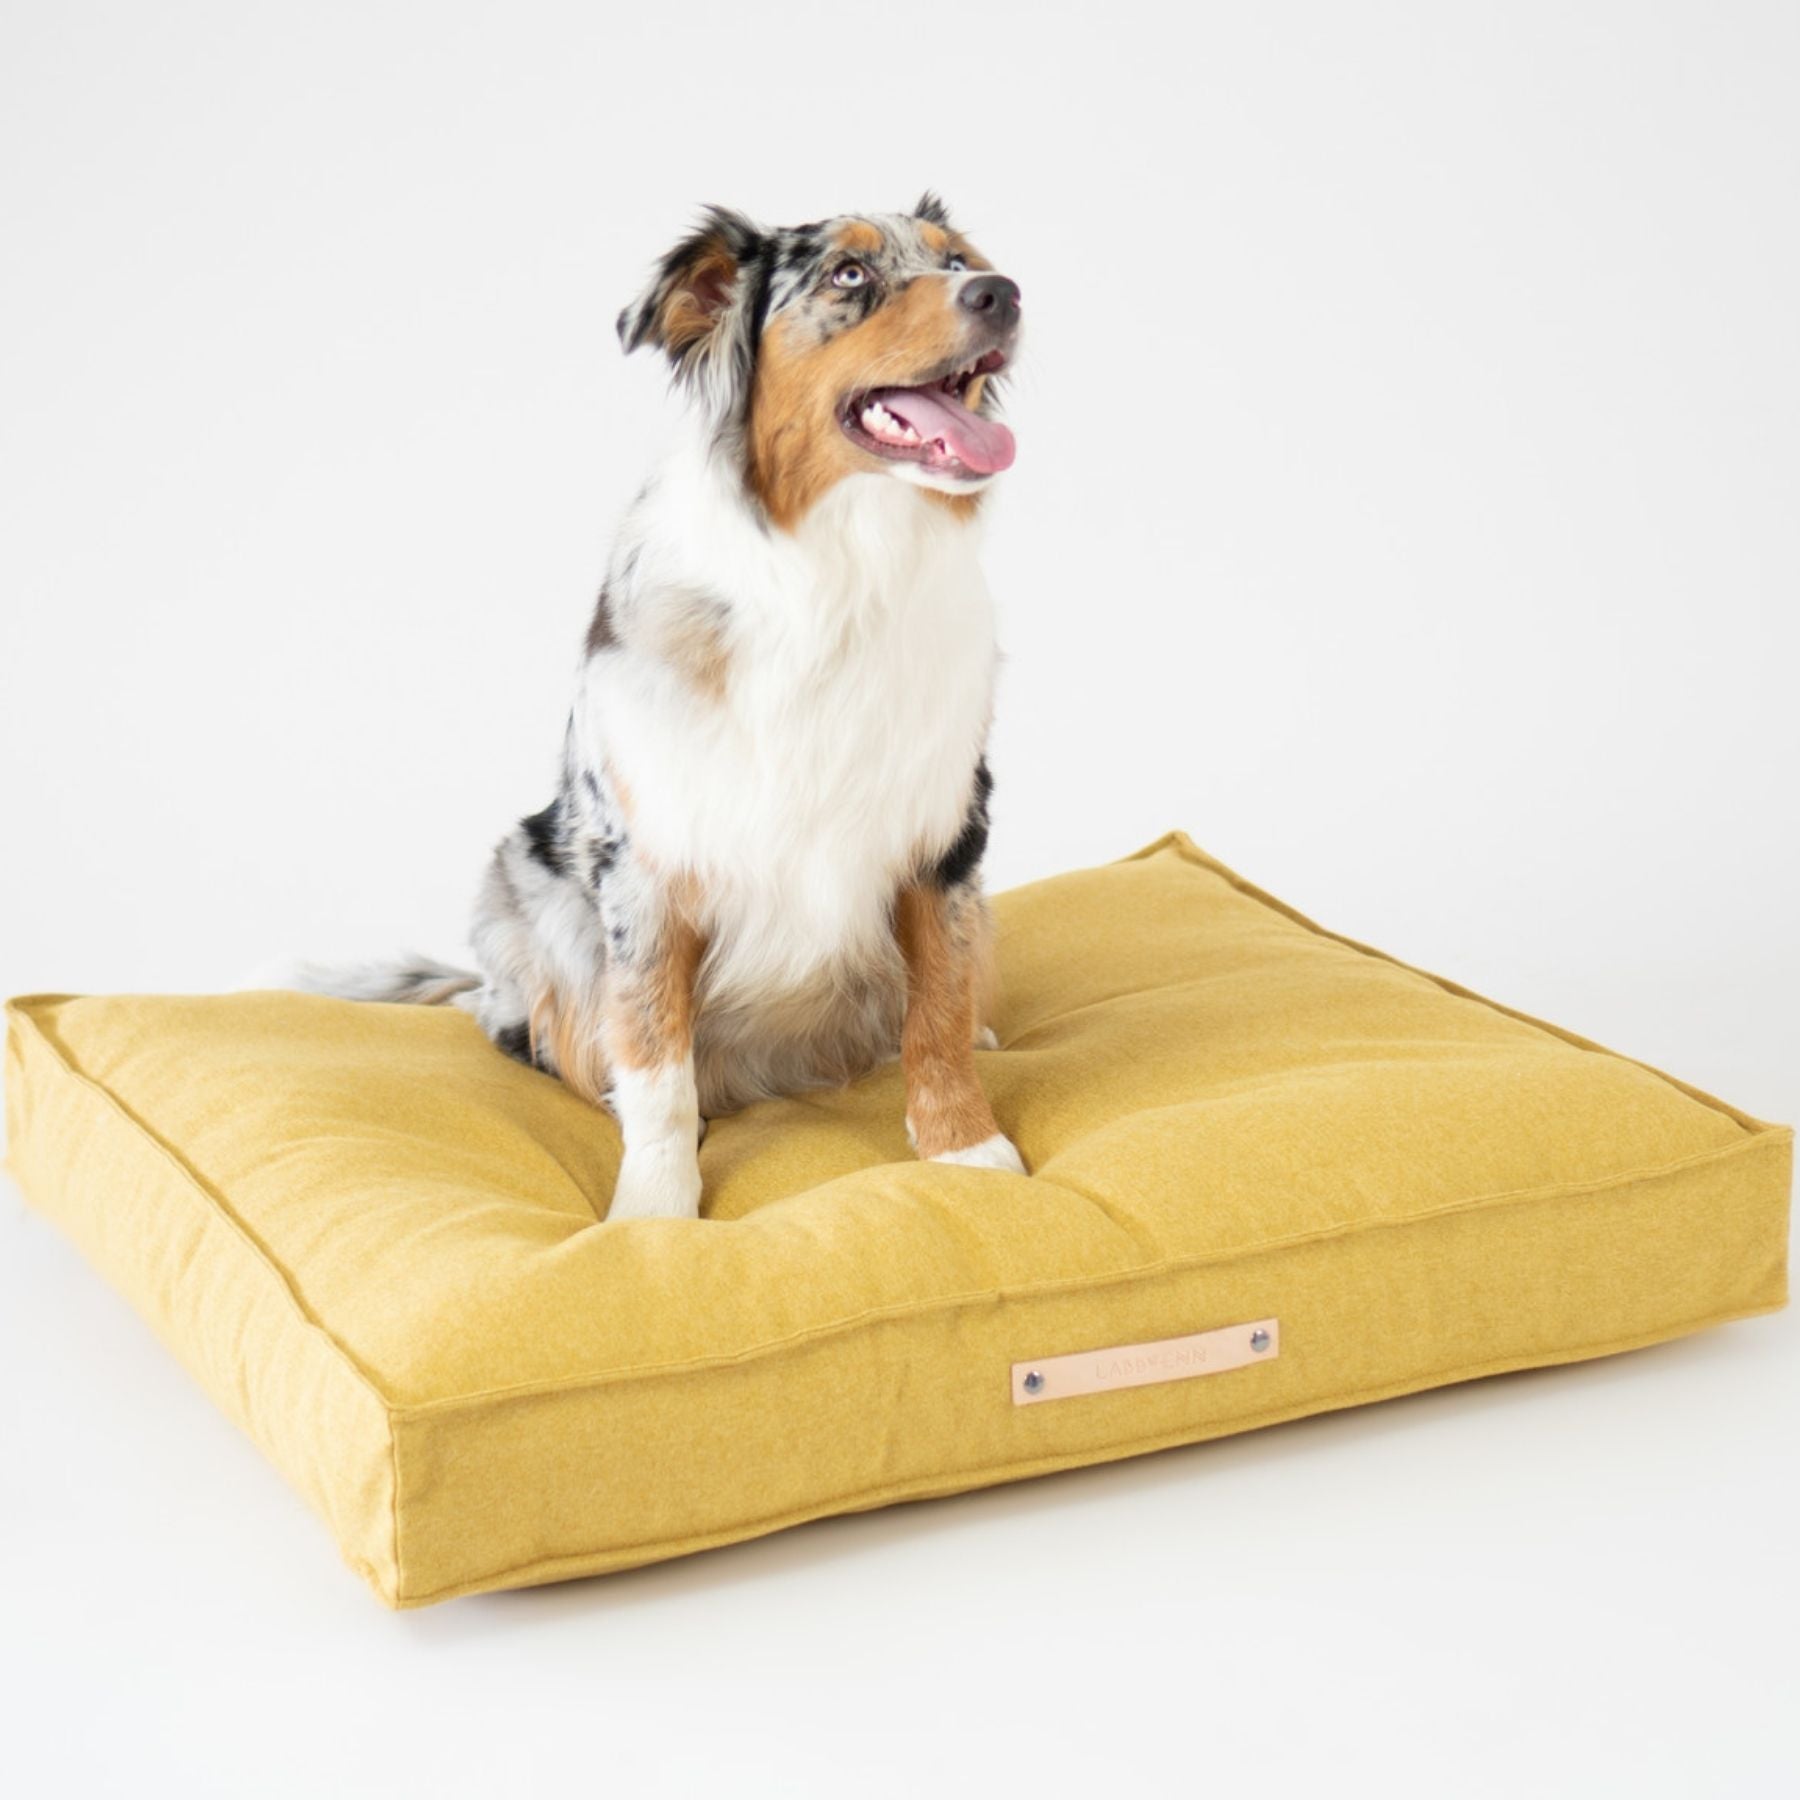 Dieses Bild zeigt ein Hundekissen im nordischen Stil von LABBVENN. Es heißt Møvik und ist in drei Farben und drei Größen erhältlich. Das Bett wird für deinen Hund in sorgfältiger Handarbeit hergestellt, ist nachhaltig und sehr luxoriös. Dies ist die Farbe Honey-Gelb.